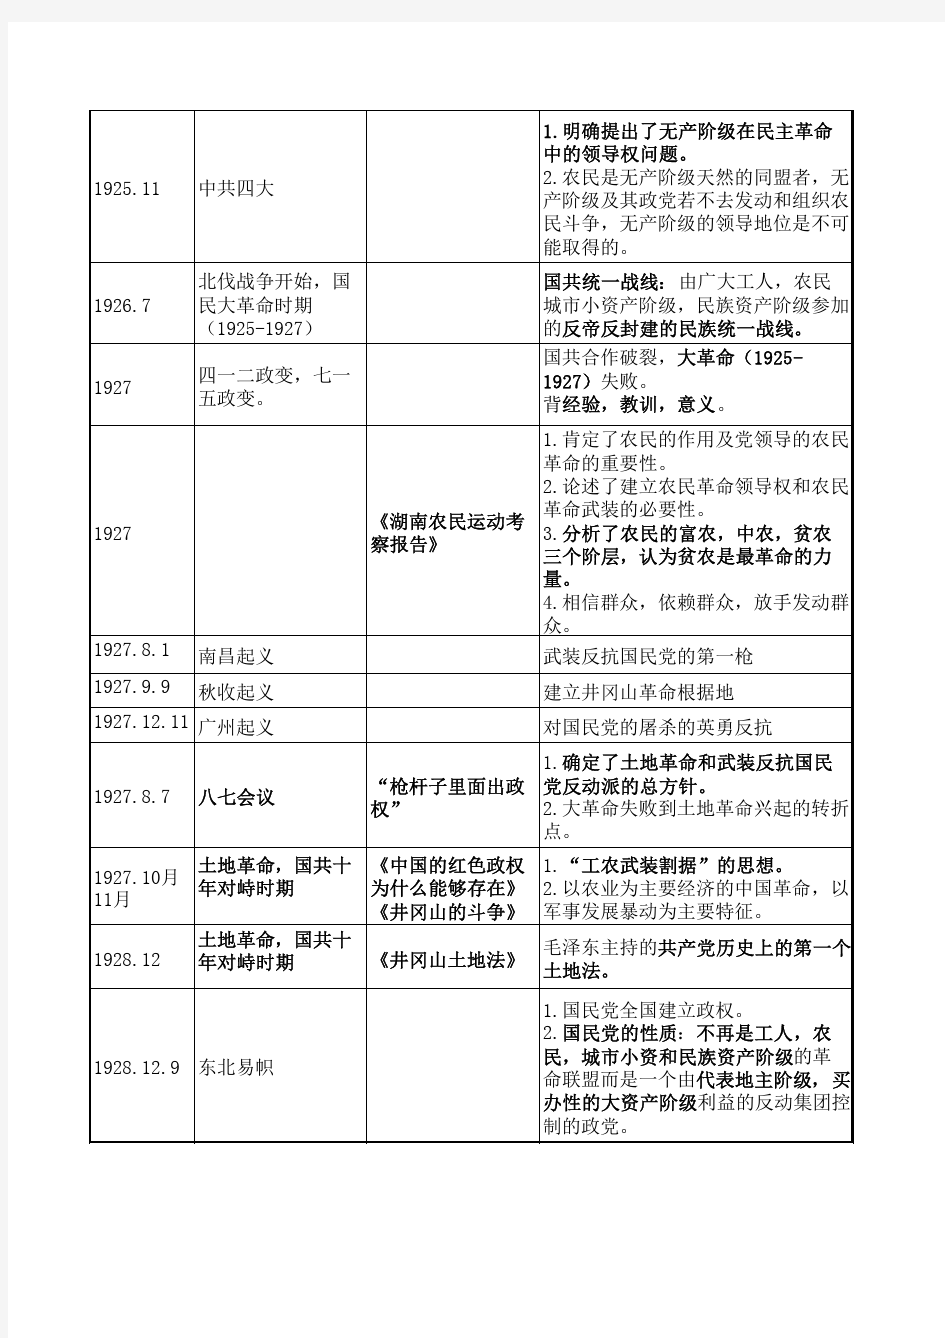 中国近现代史事件一览表(部分)